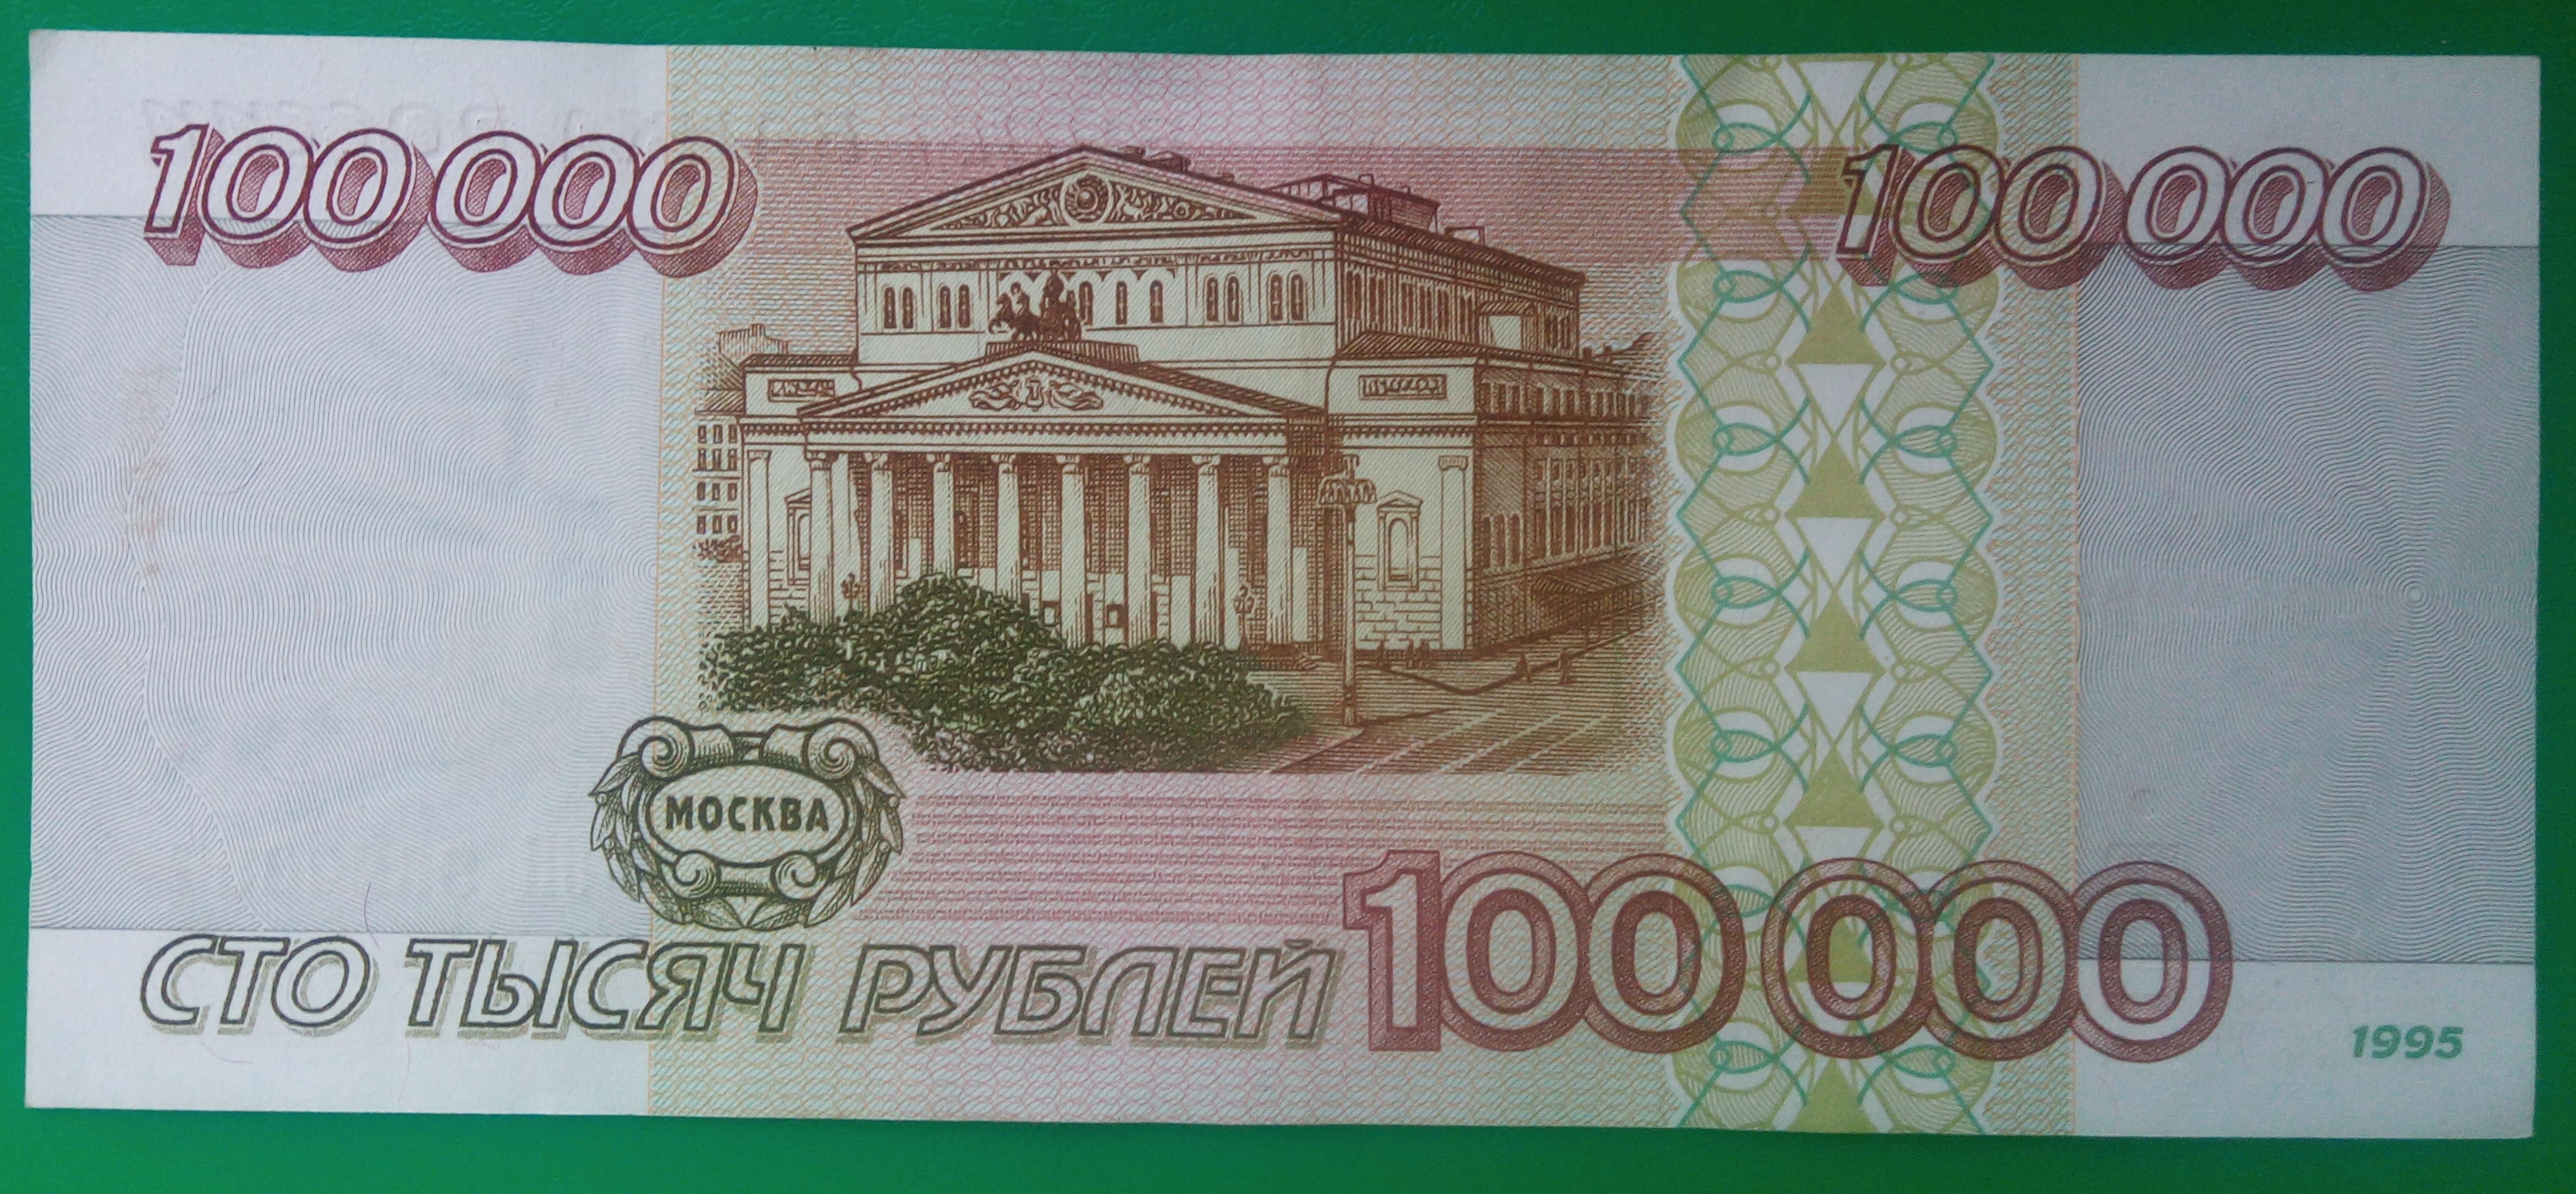 Сто пятьдесят три тысячи. СТО рублей. Купюра 100 рублей. Купюры 1995 года. 100000 Рублей 1995 года.